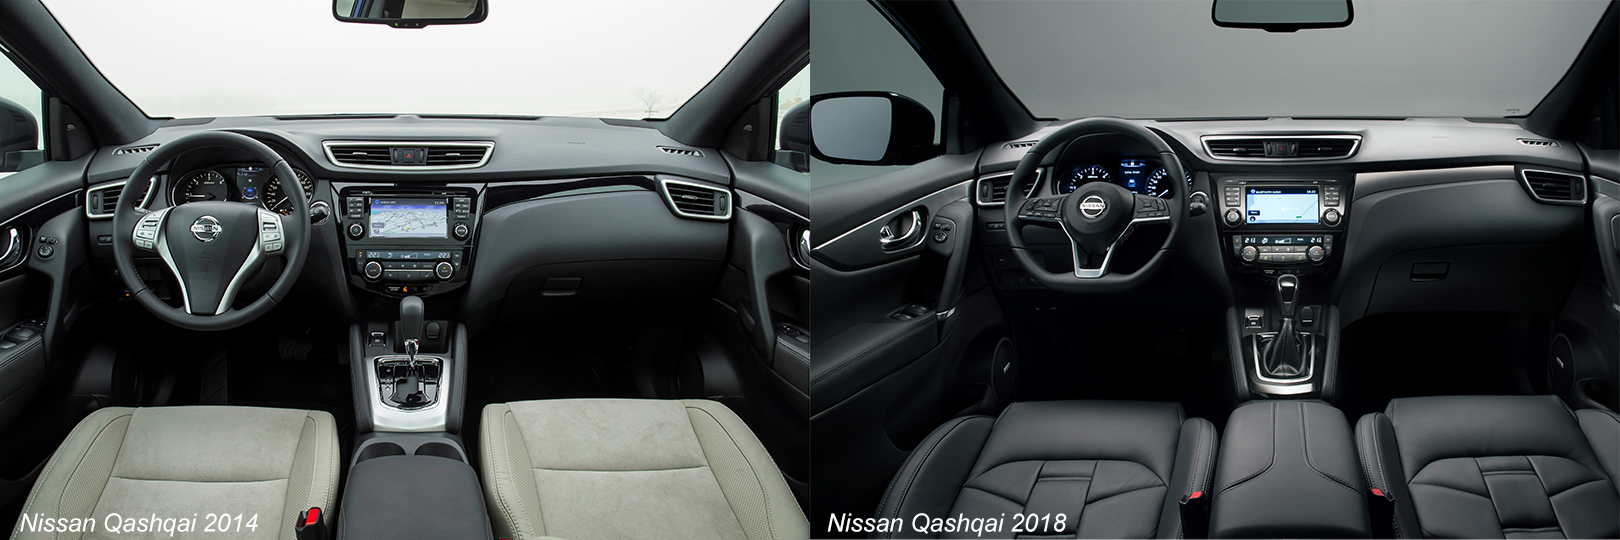 Nissan Qashqai: сравнение